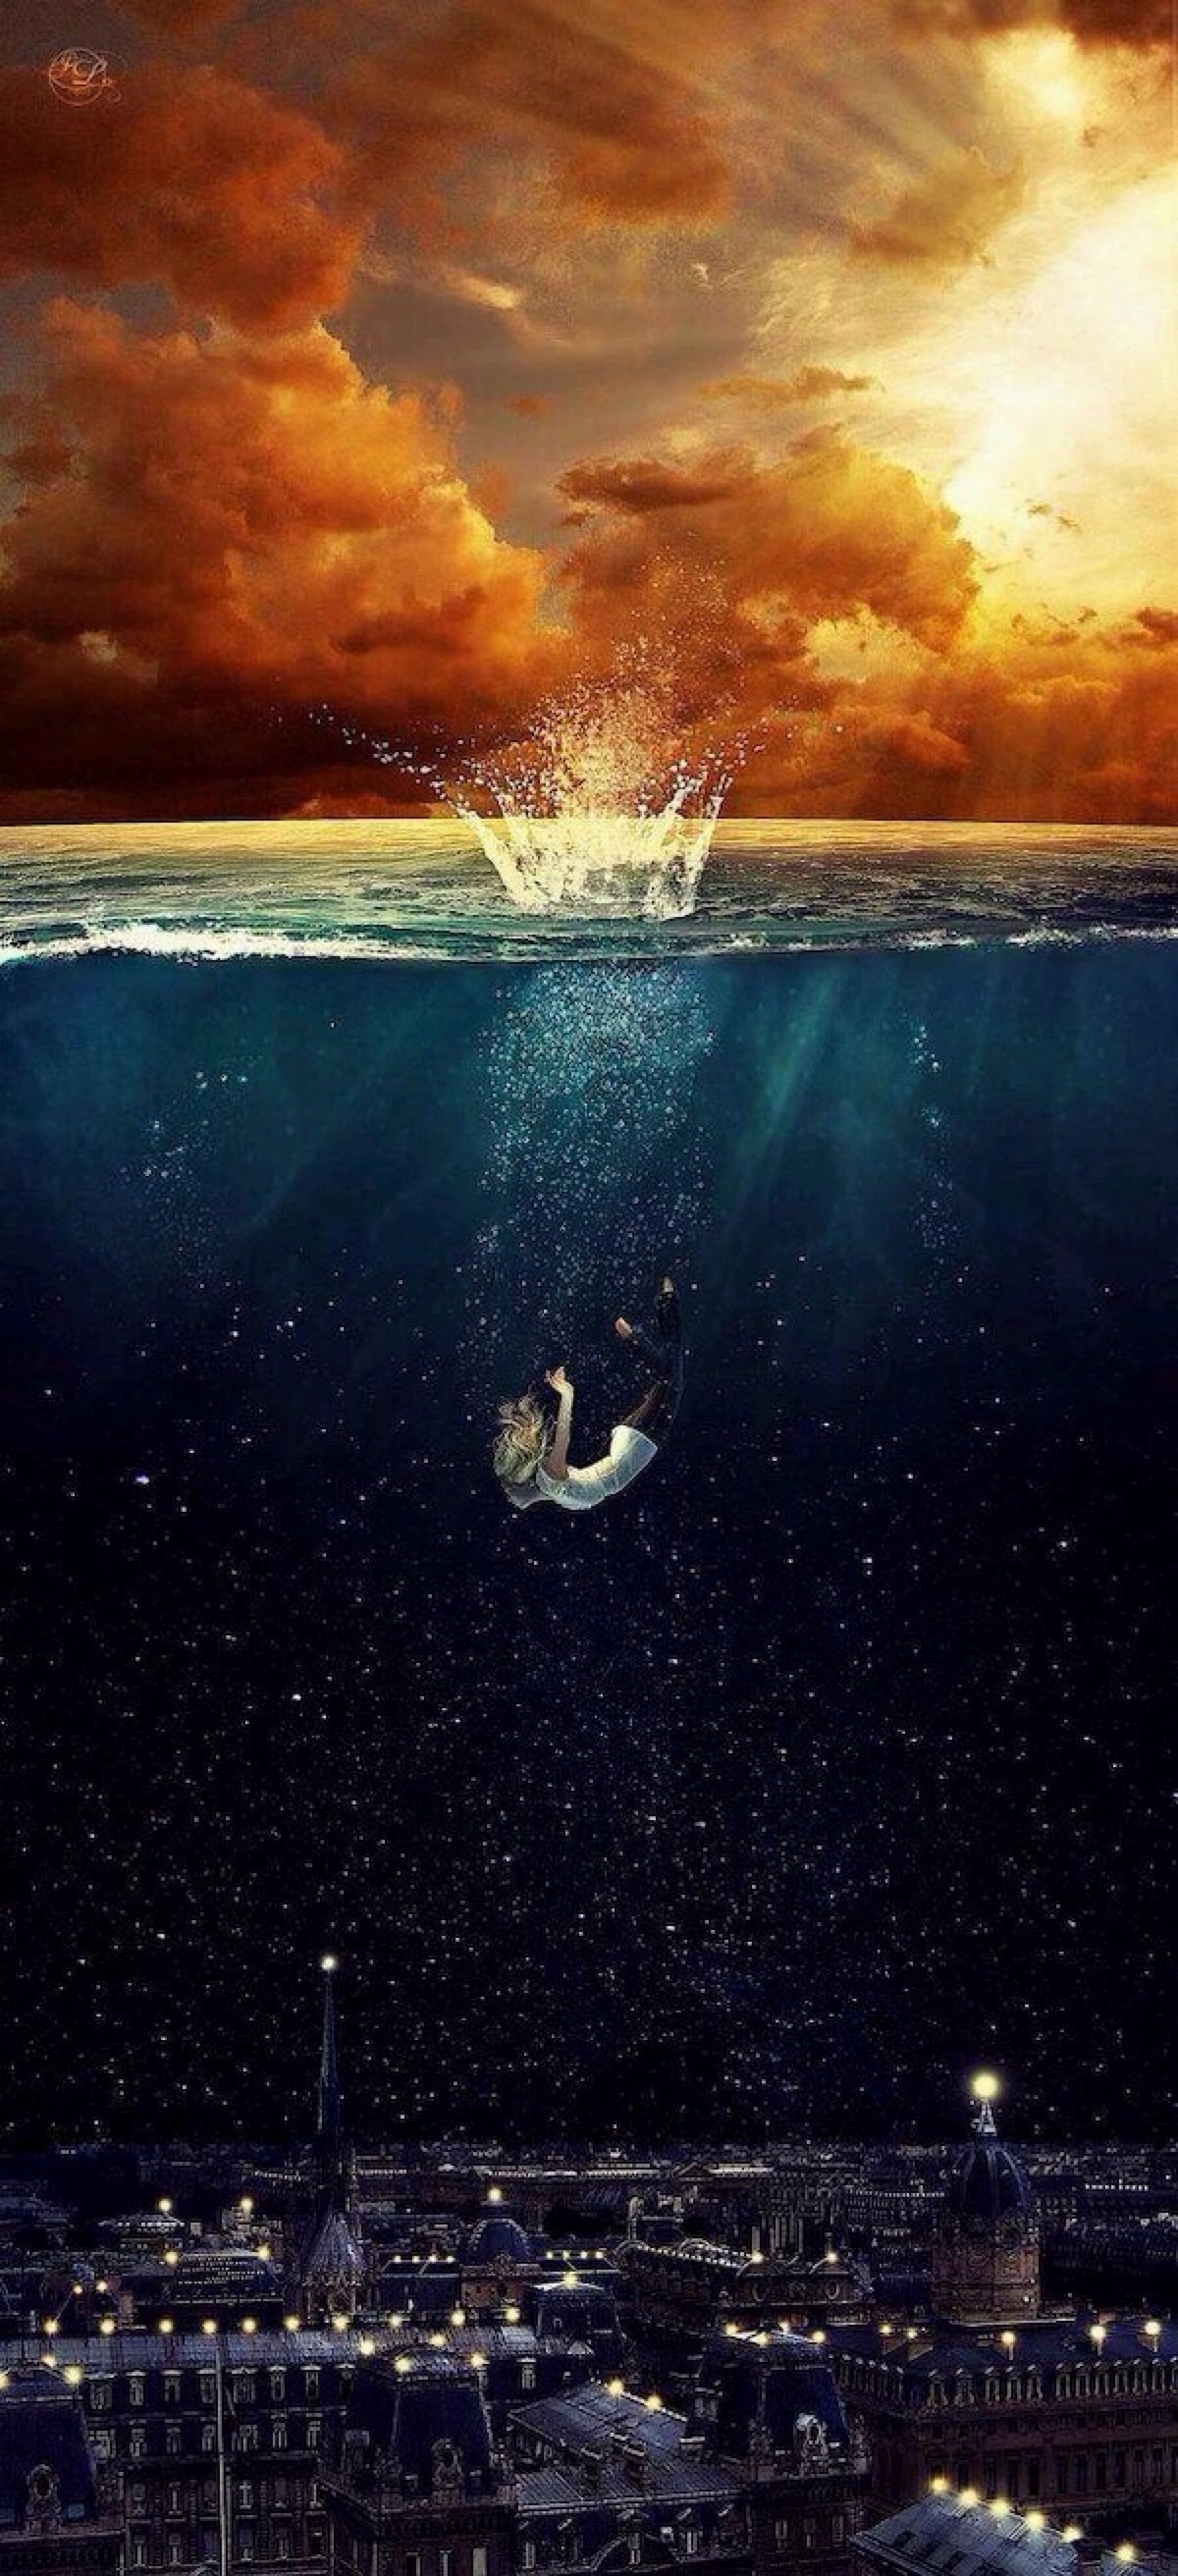 当一个艘船沉入海底,当一个人成了迷.